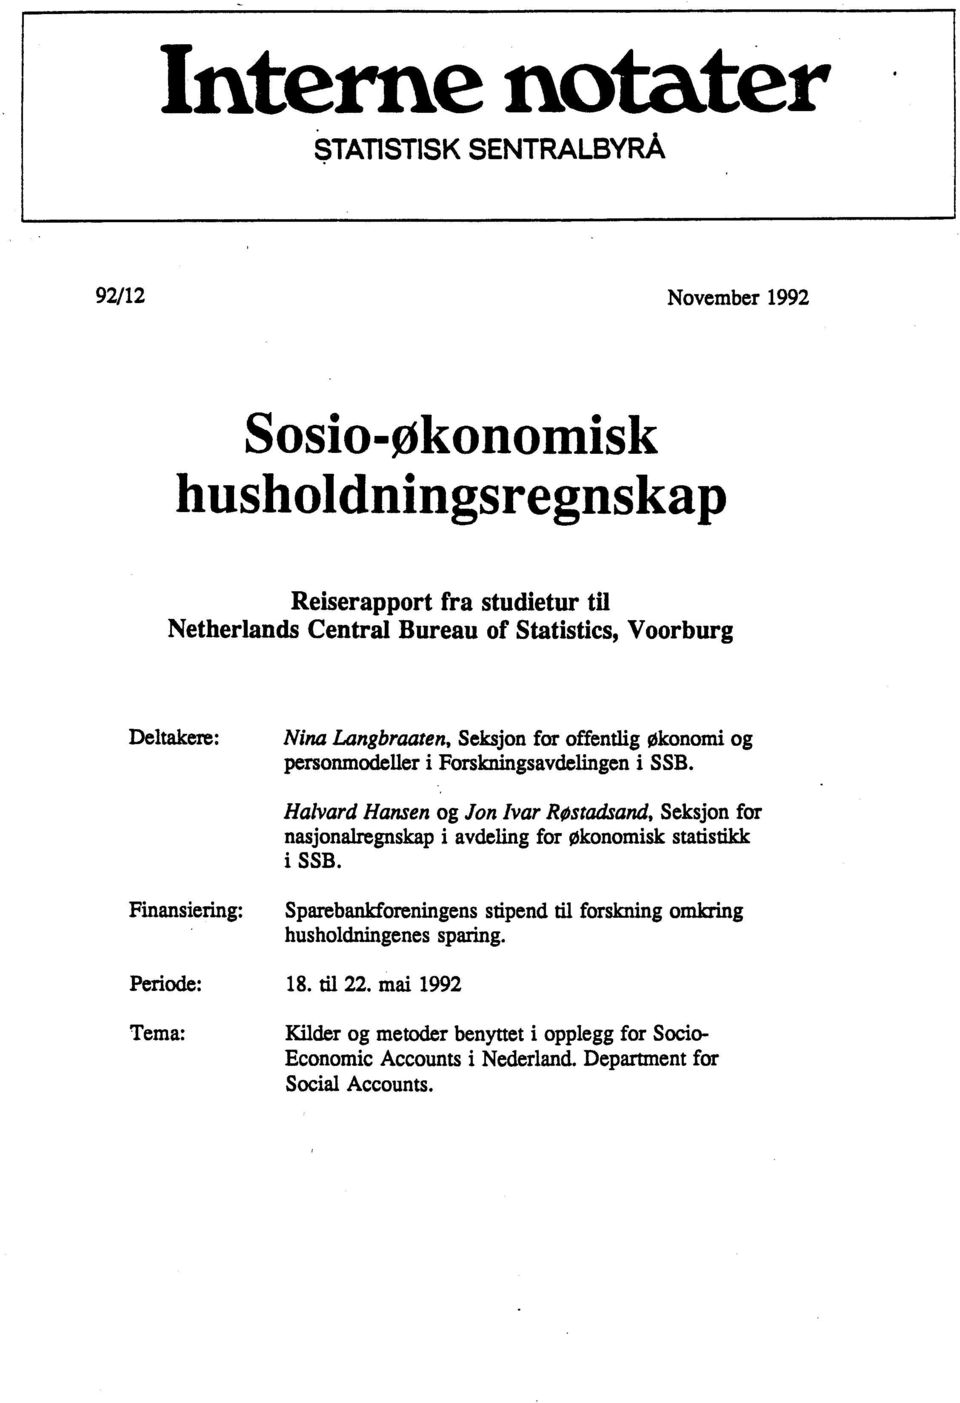 Halvard Hansen og Jon Ivar RøstØand, Seksjon for nasjonalregnskap i avdeling for Økonomisk statistikk i SSB.